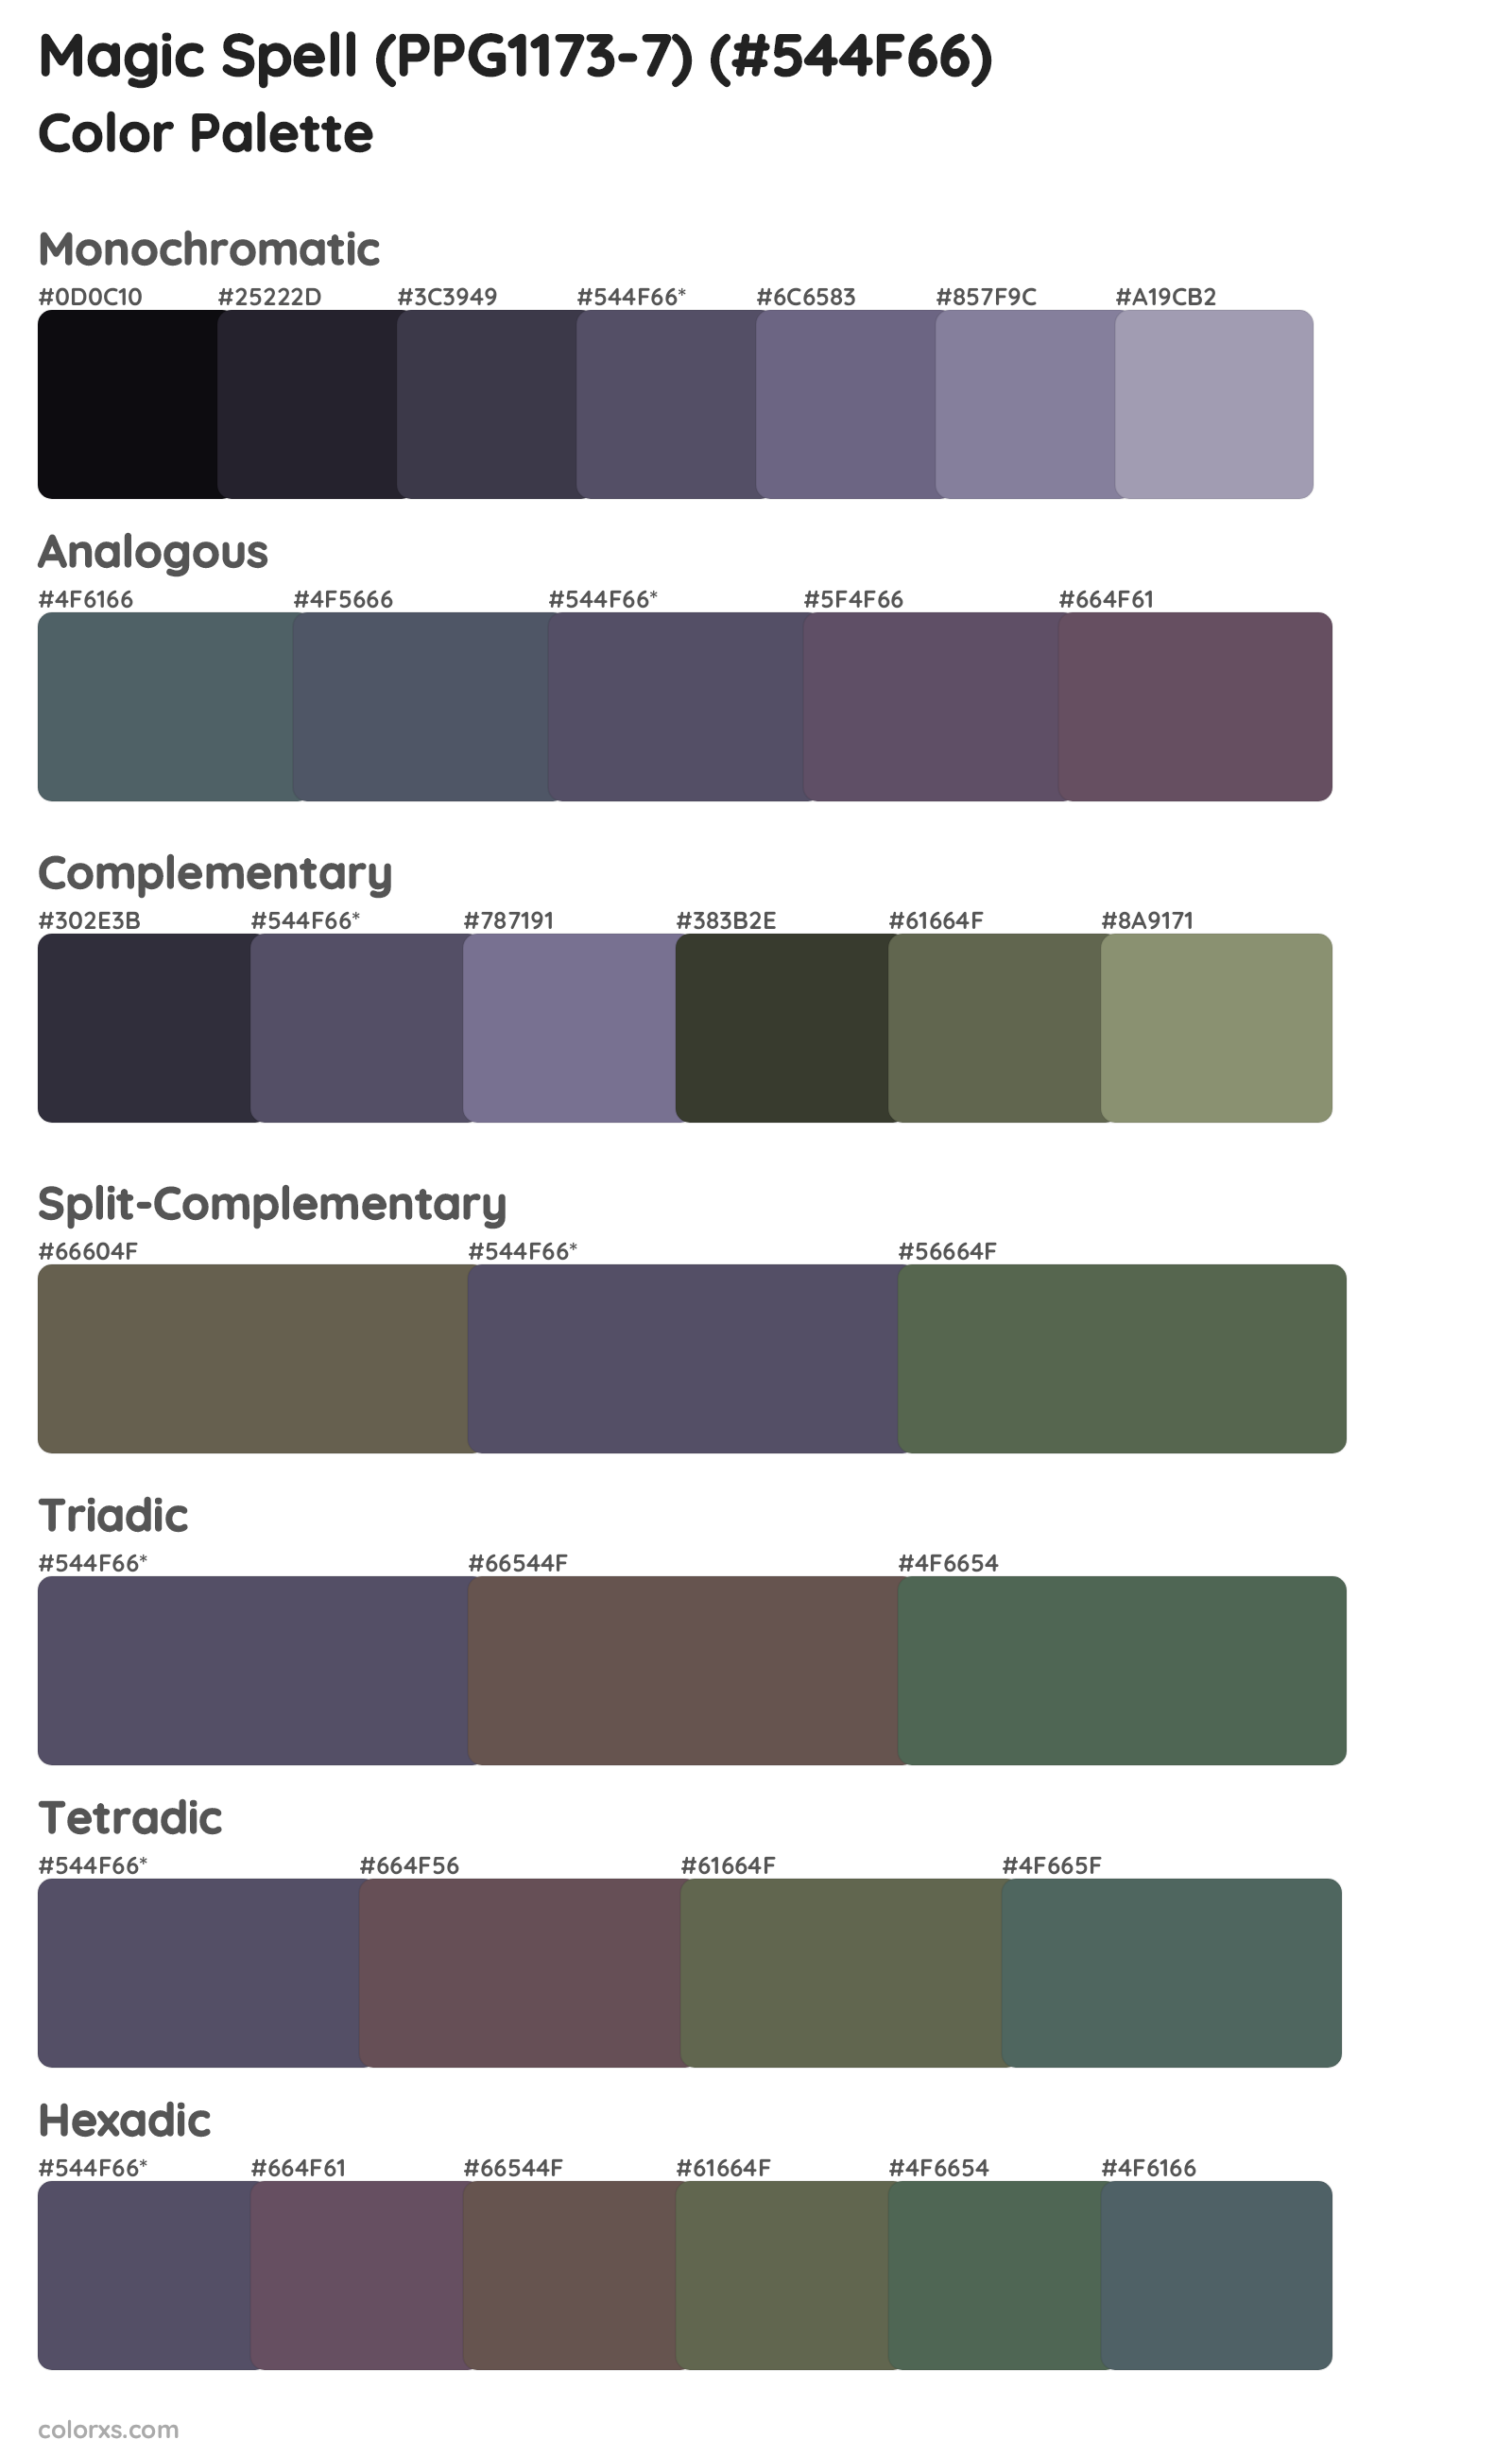 Magic Spell (PPG1173-7) Color Scheme Palettes